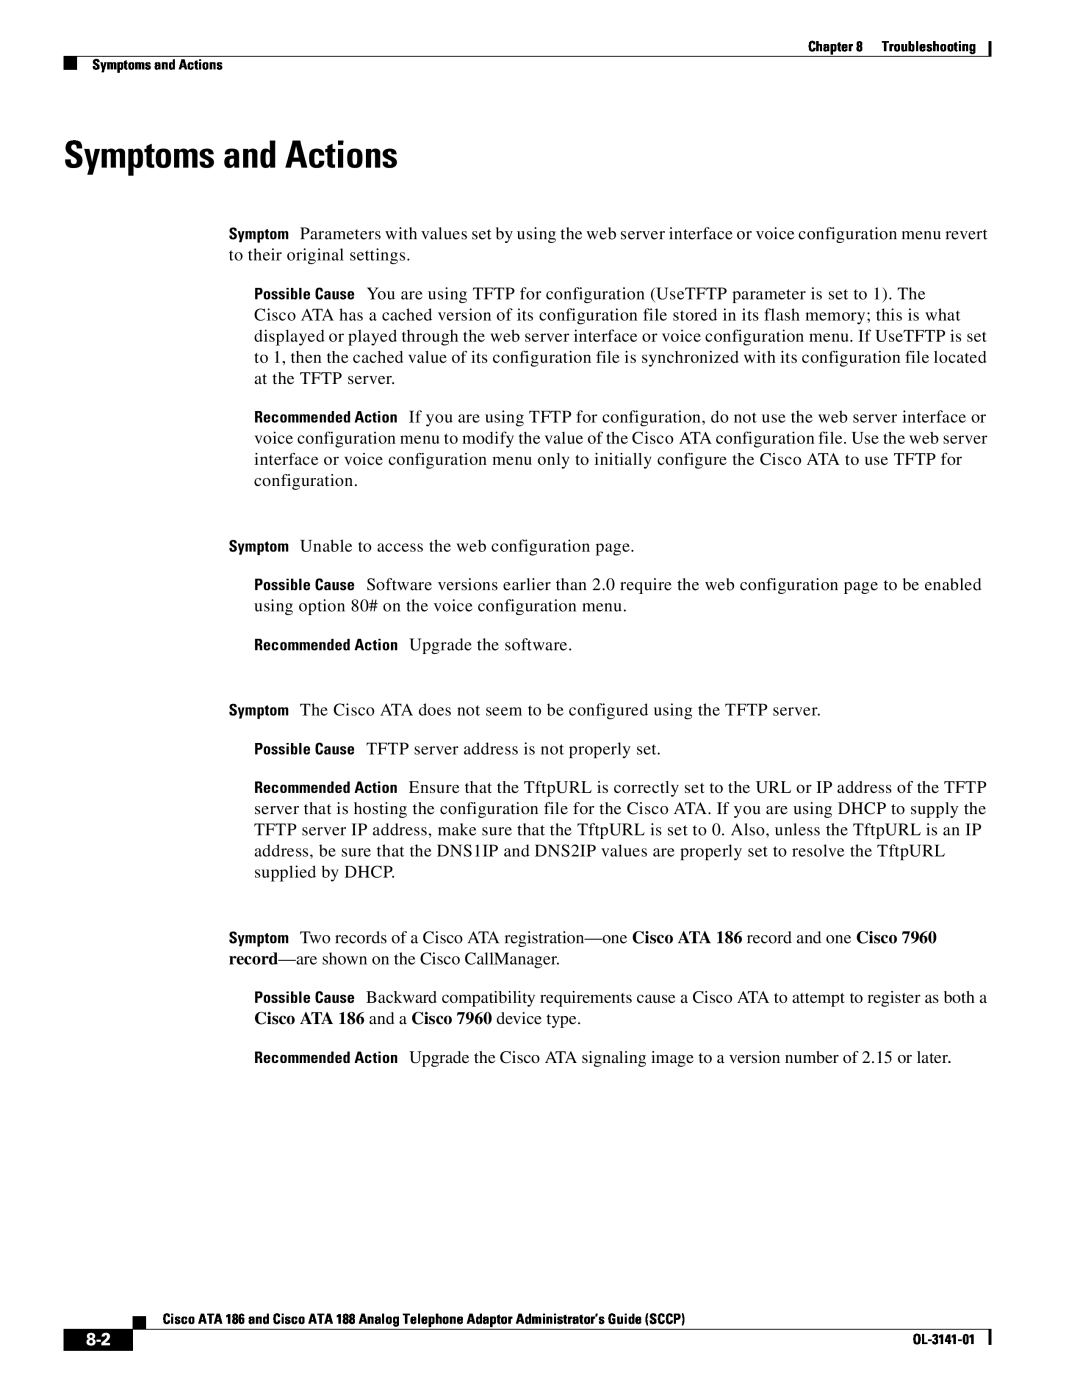 Cisco Systems ATA 186, ATA 188 manual Symptoms and Actions 